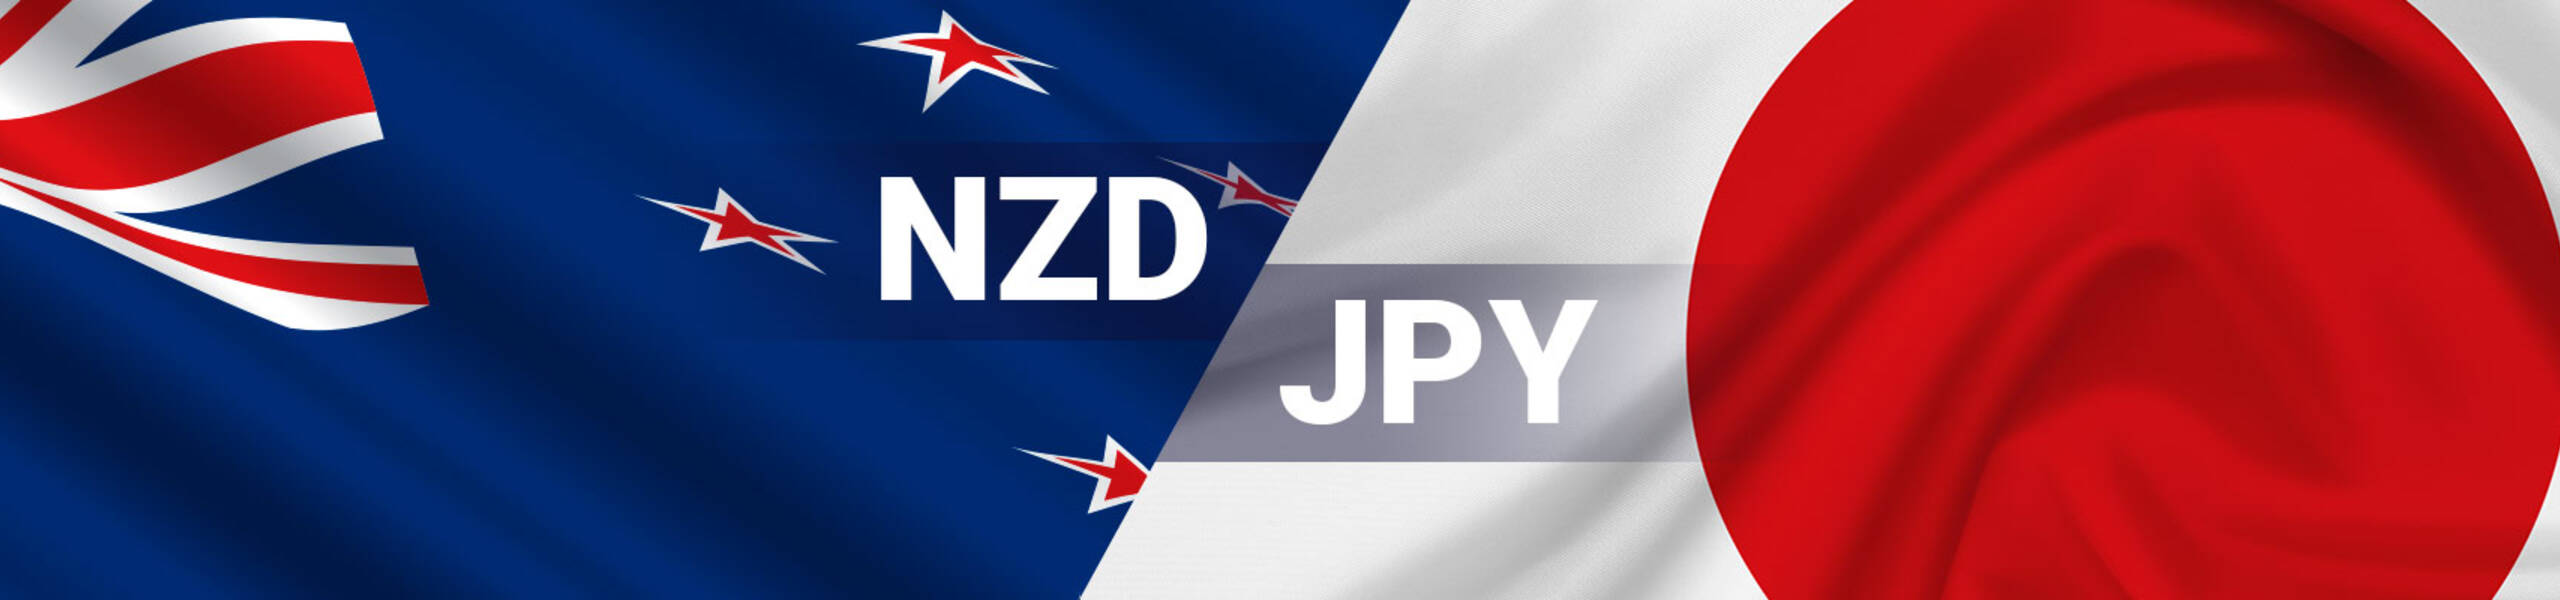 NZD/JPY テクニカル分析 2018/05/03